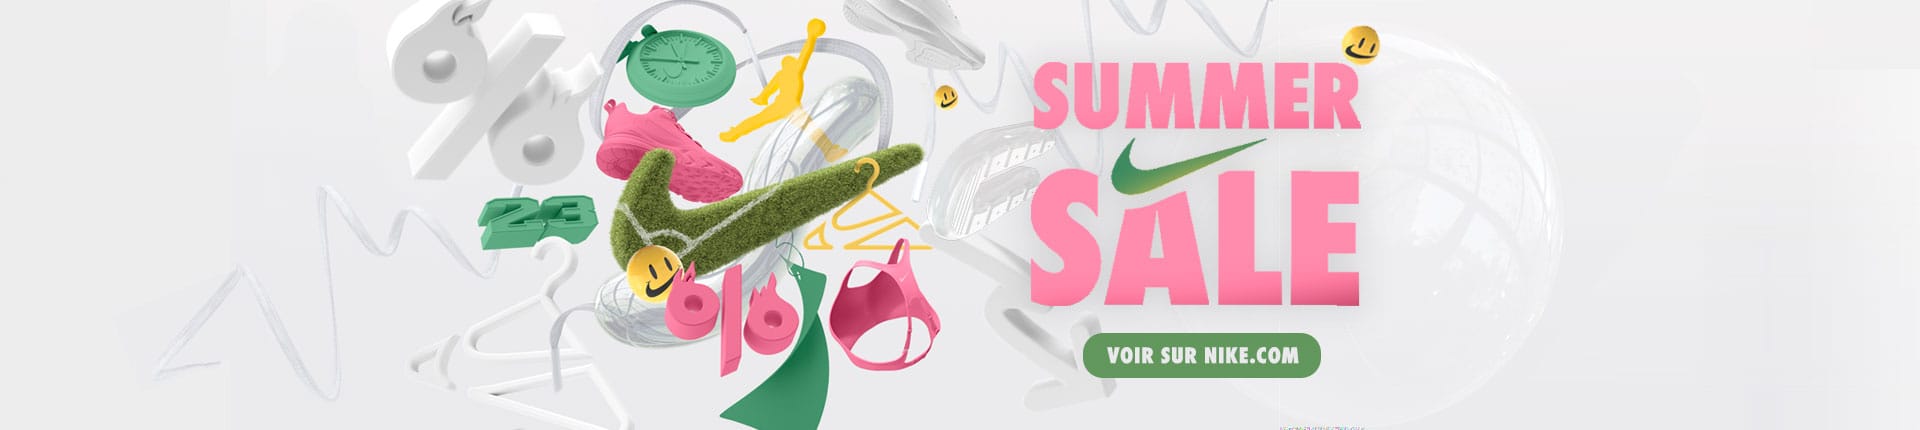 Nike Summer Sales